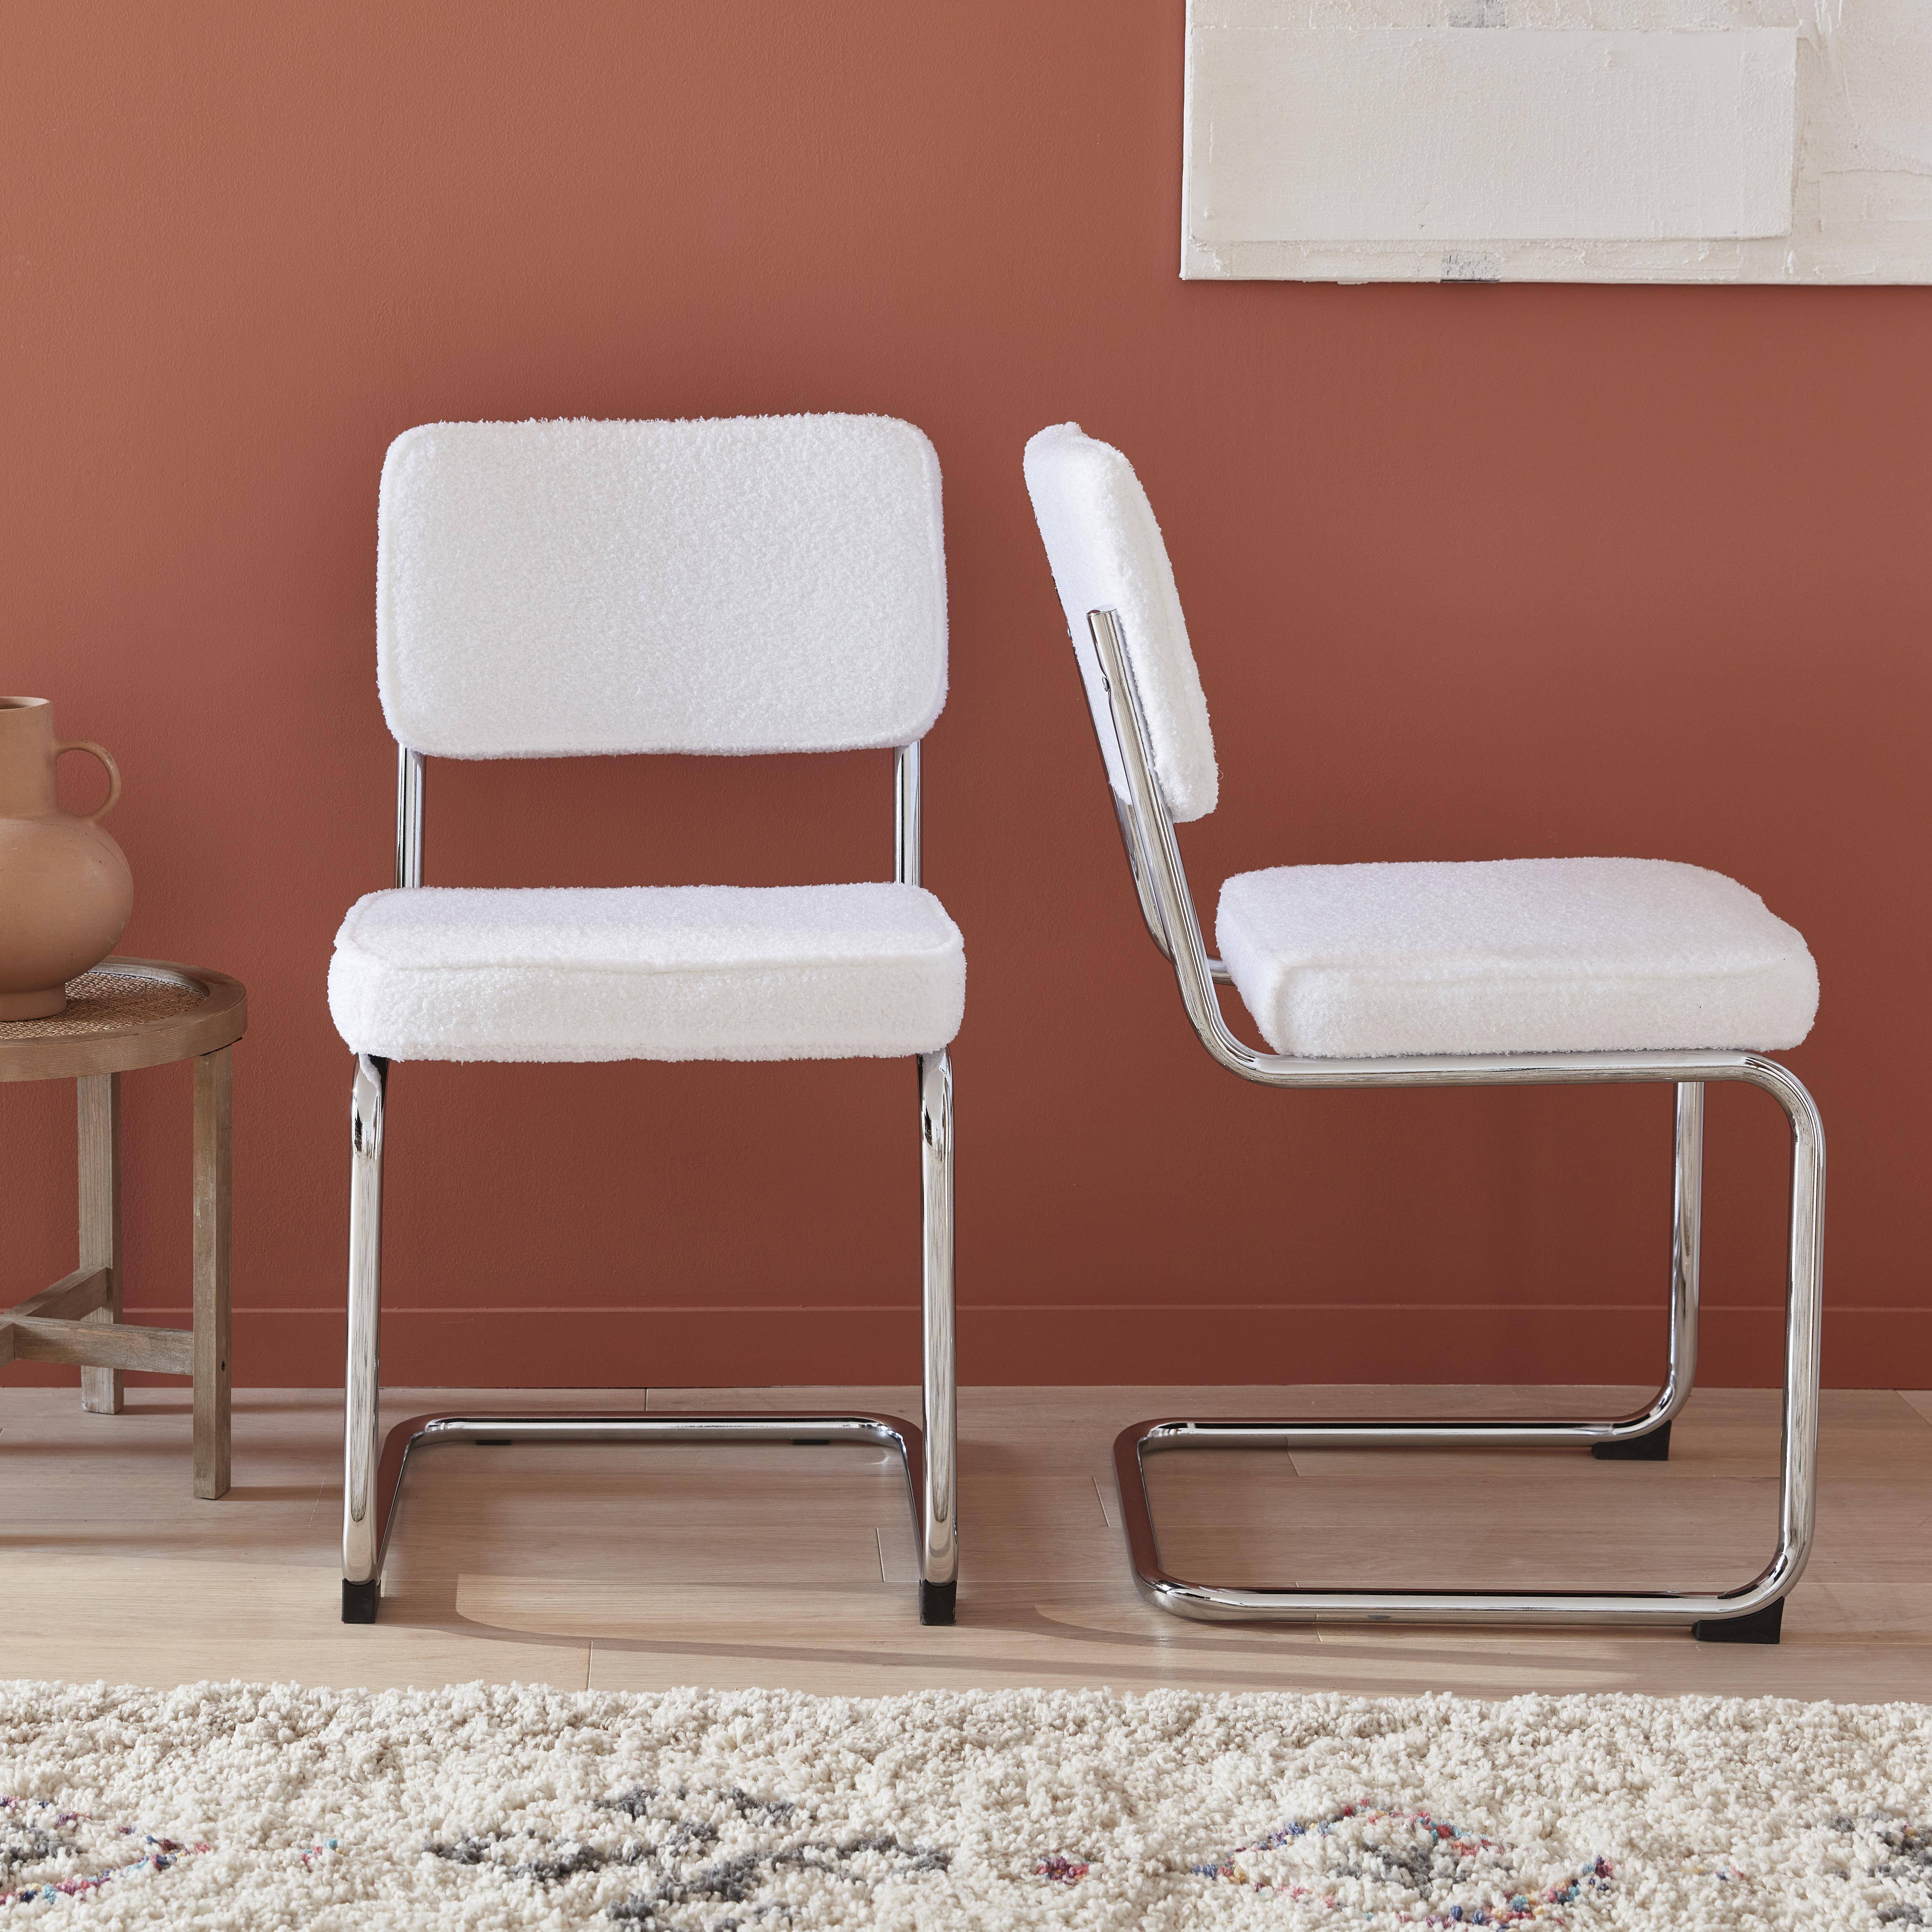 2 sillas voladizas - Maja - con rizos blancos, 46 x 54,5 x 84,5cm  ,sweeek,Photo2